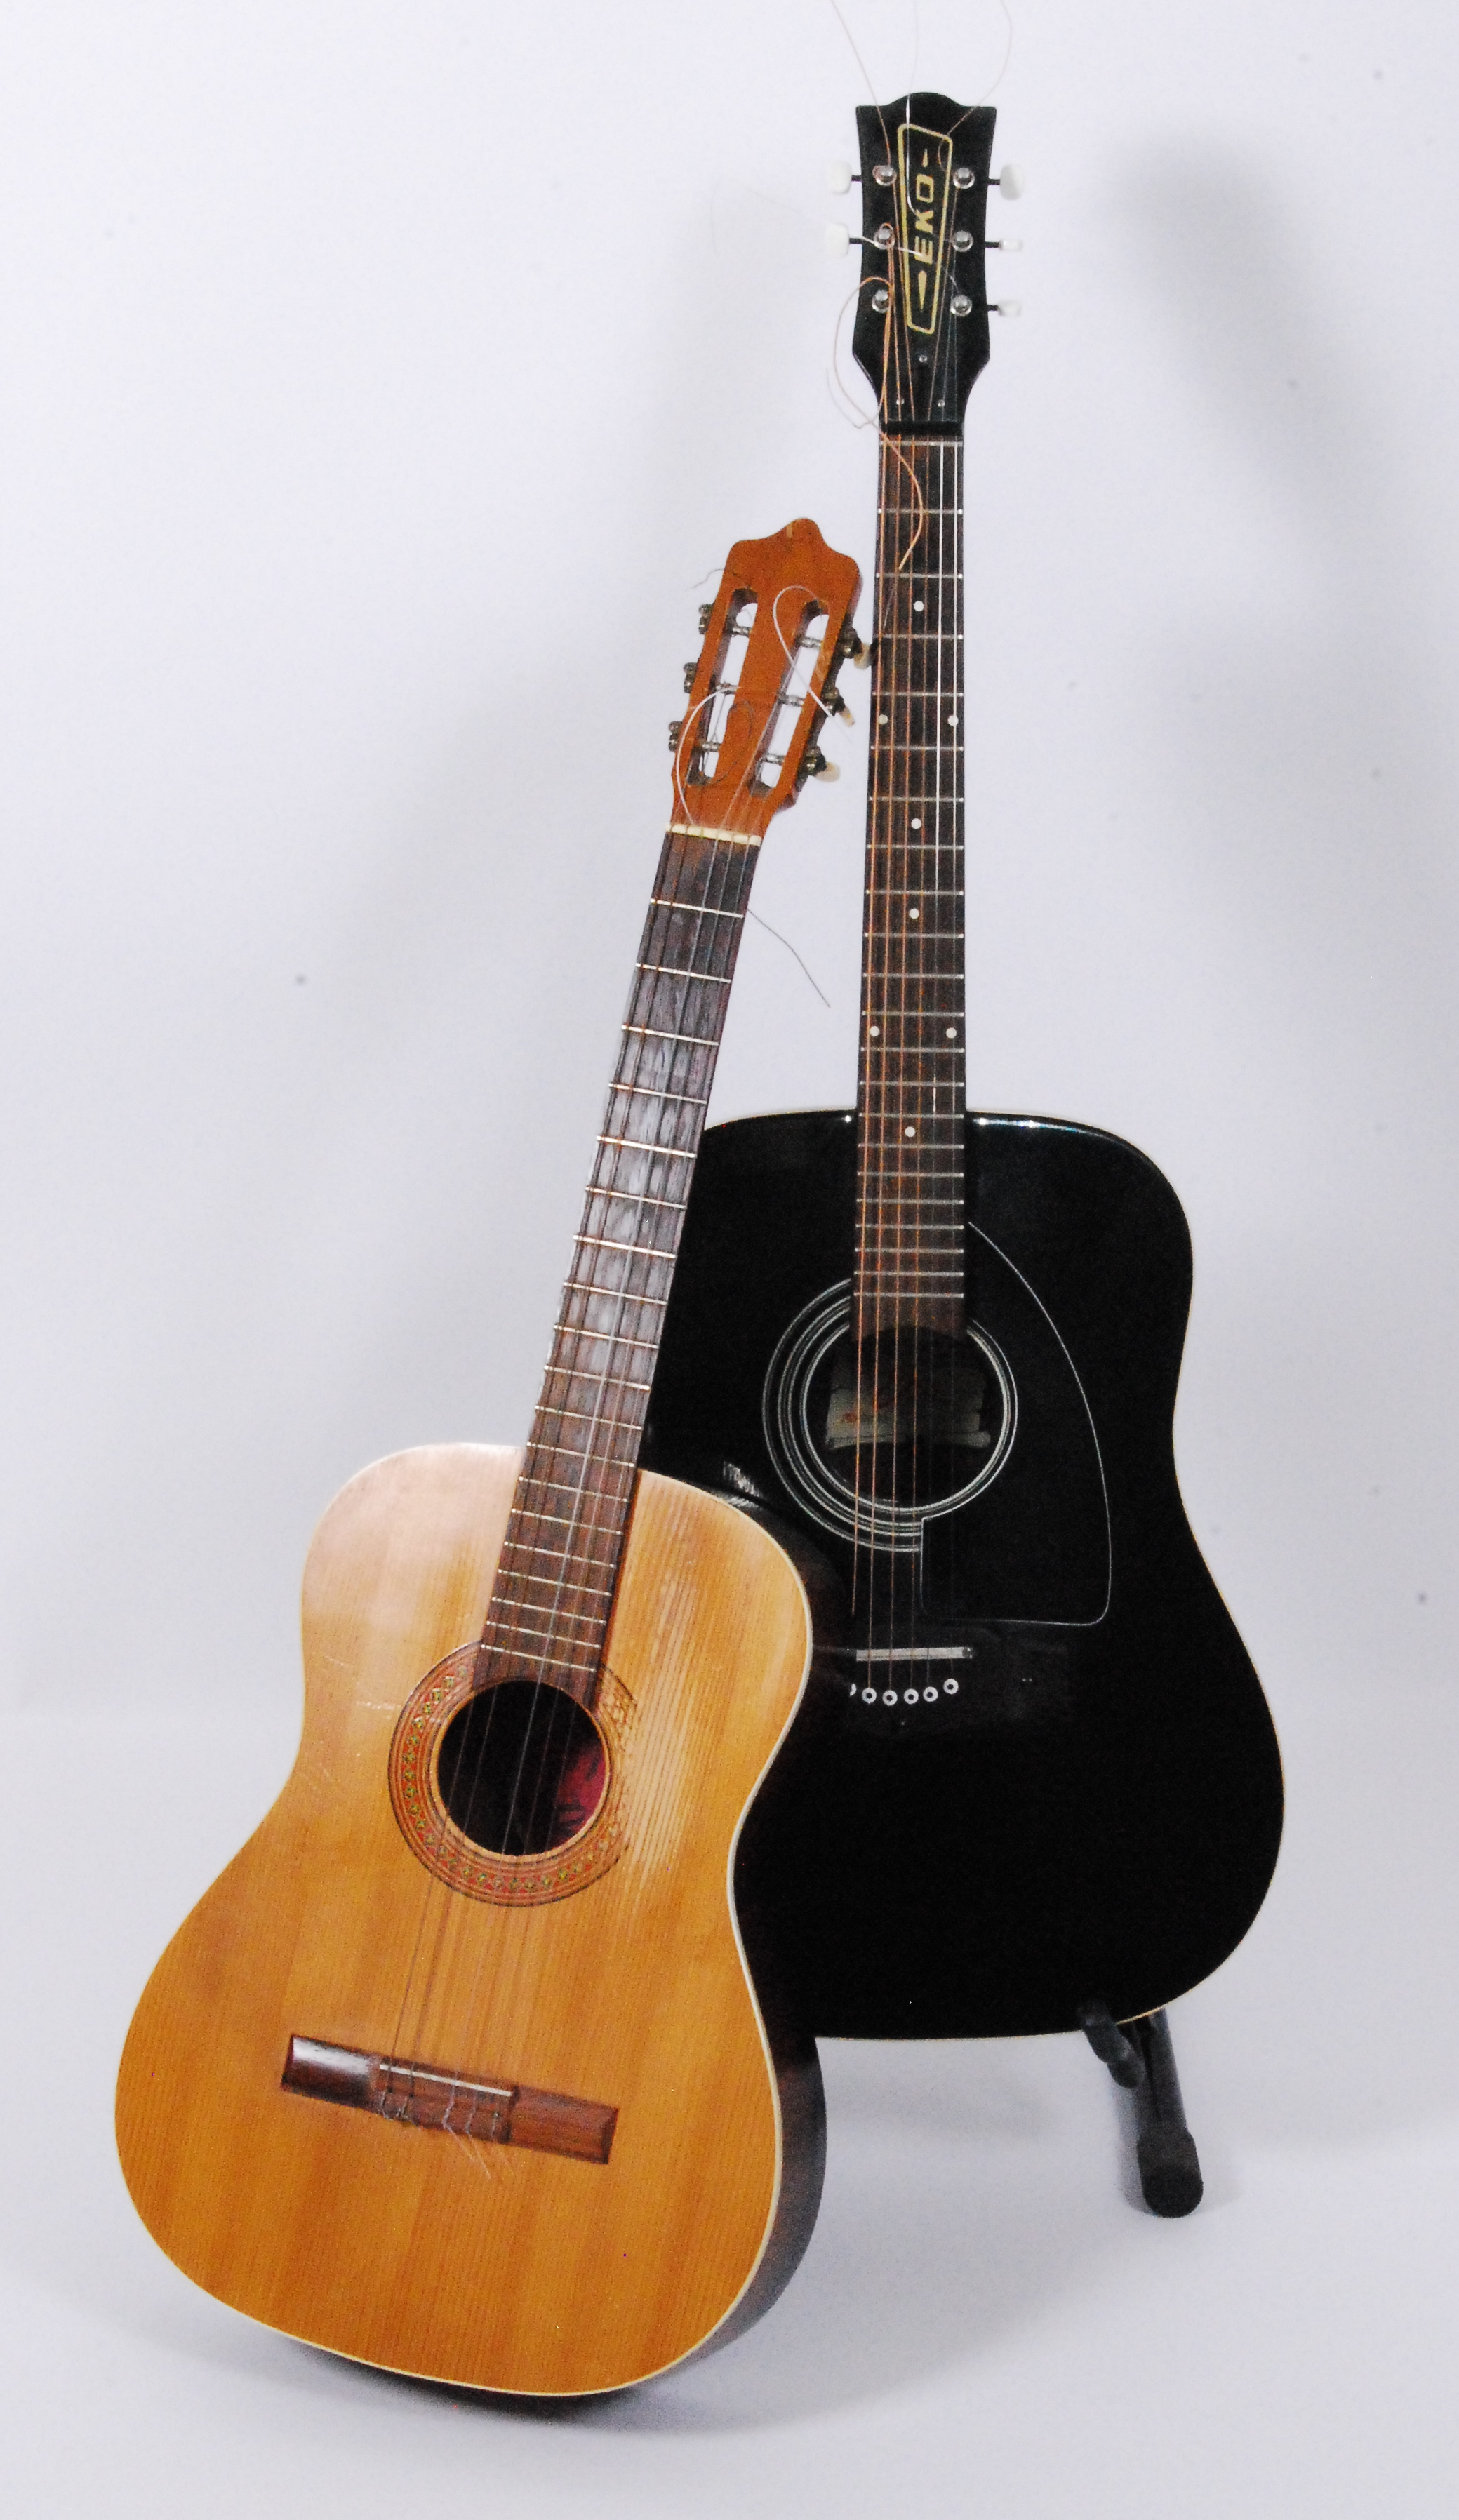 An Eko acoustic guitar